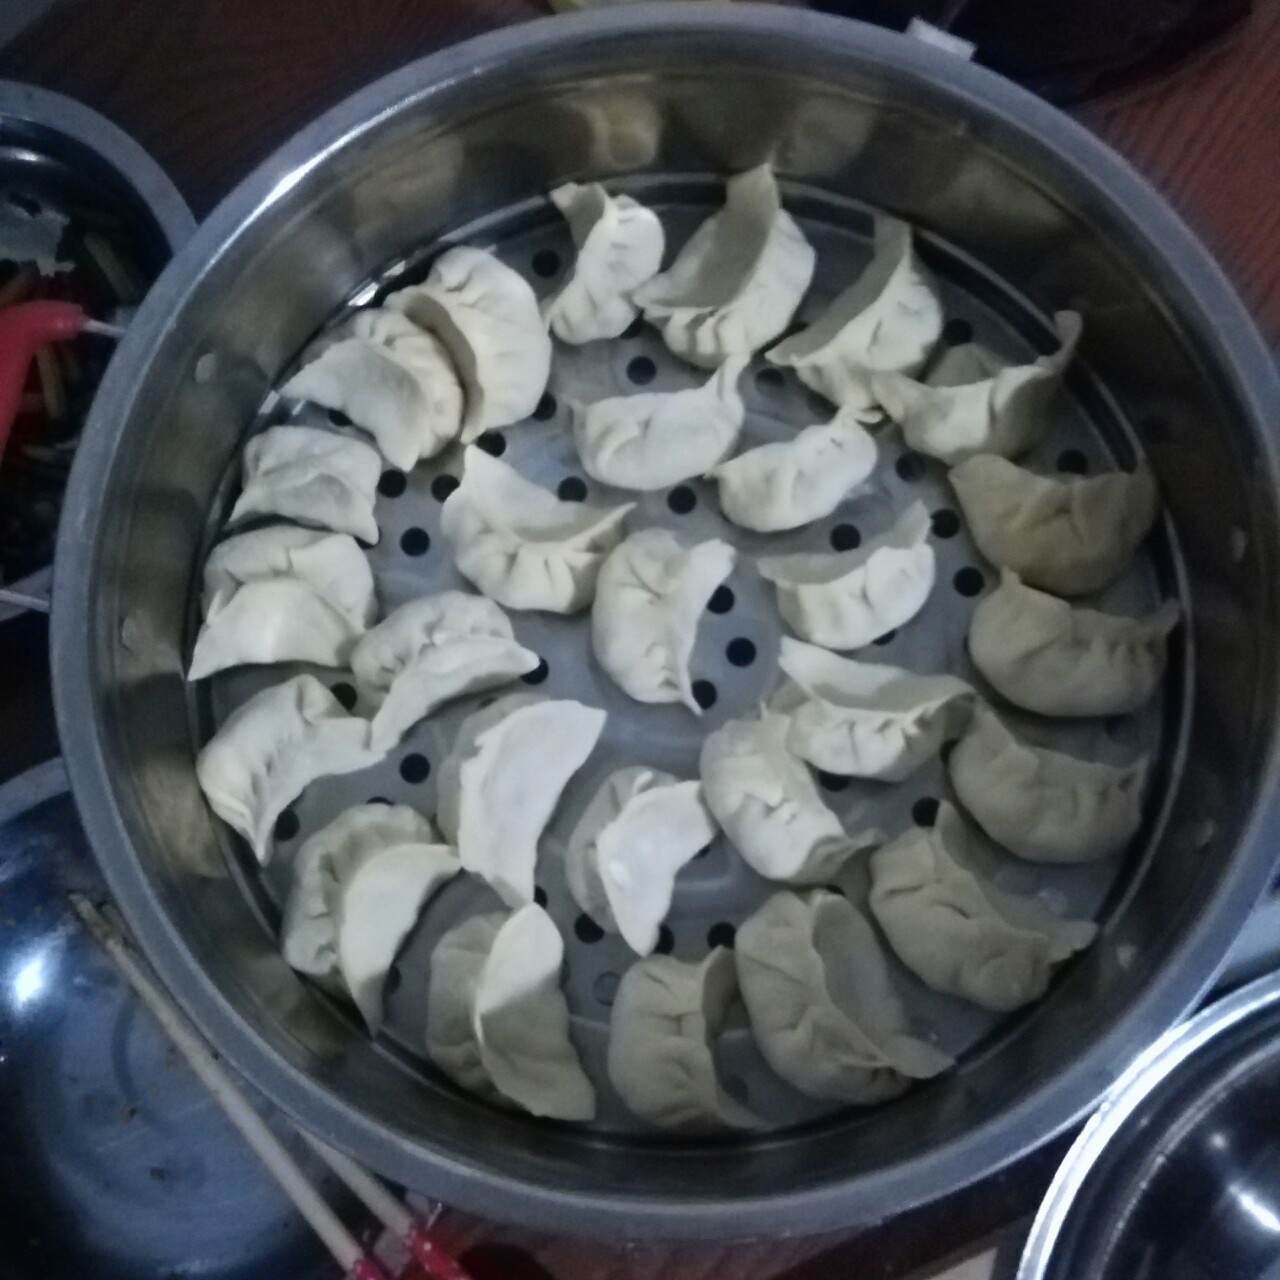 香菇猪肉饺子